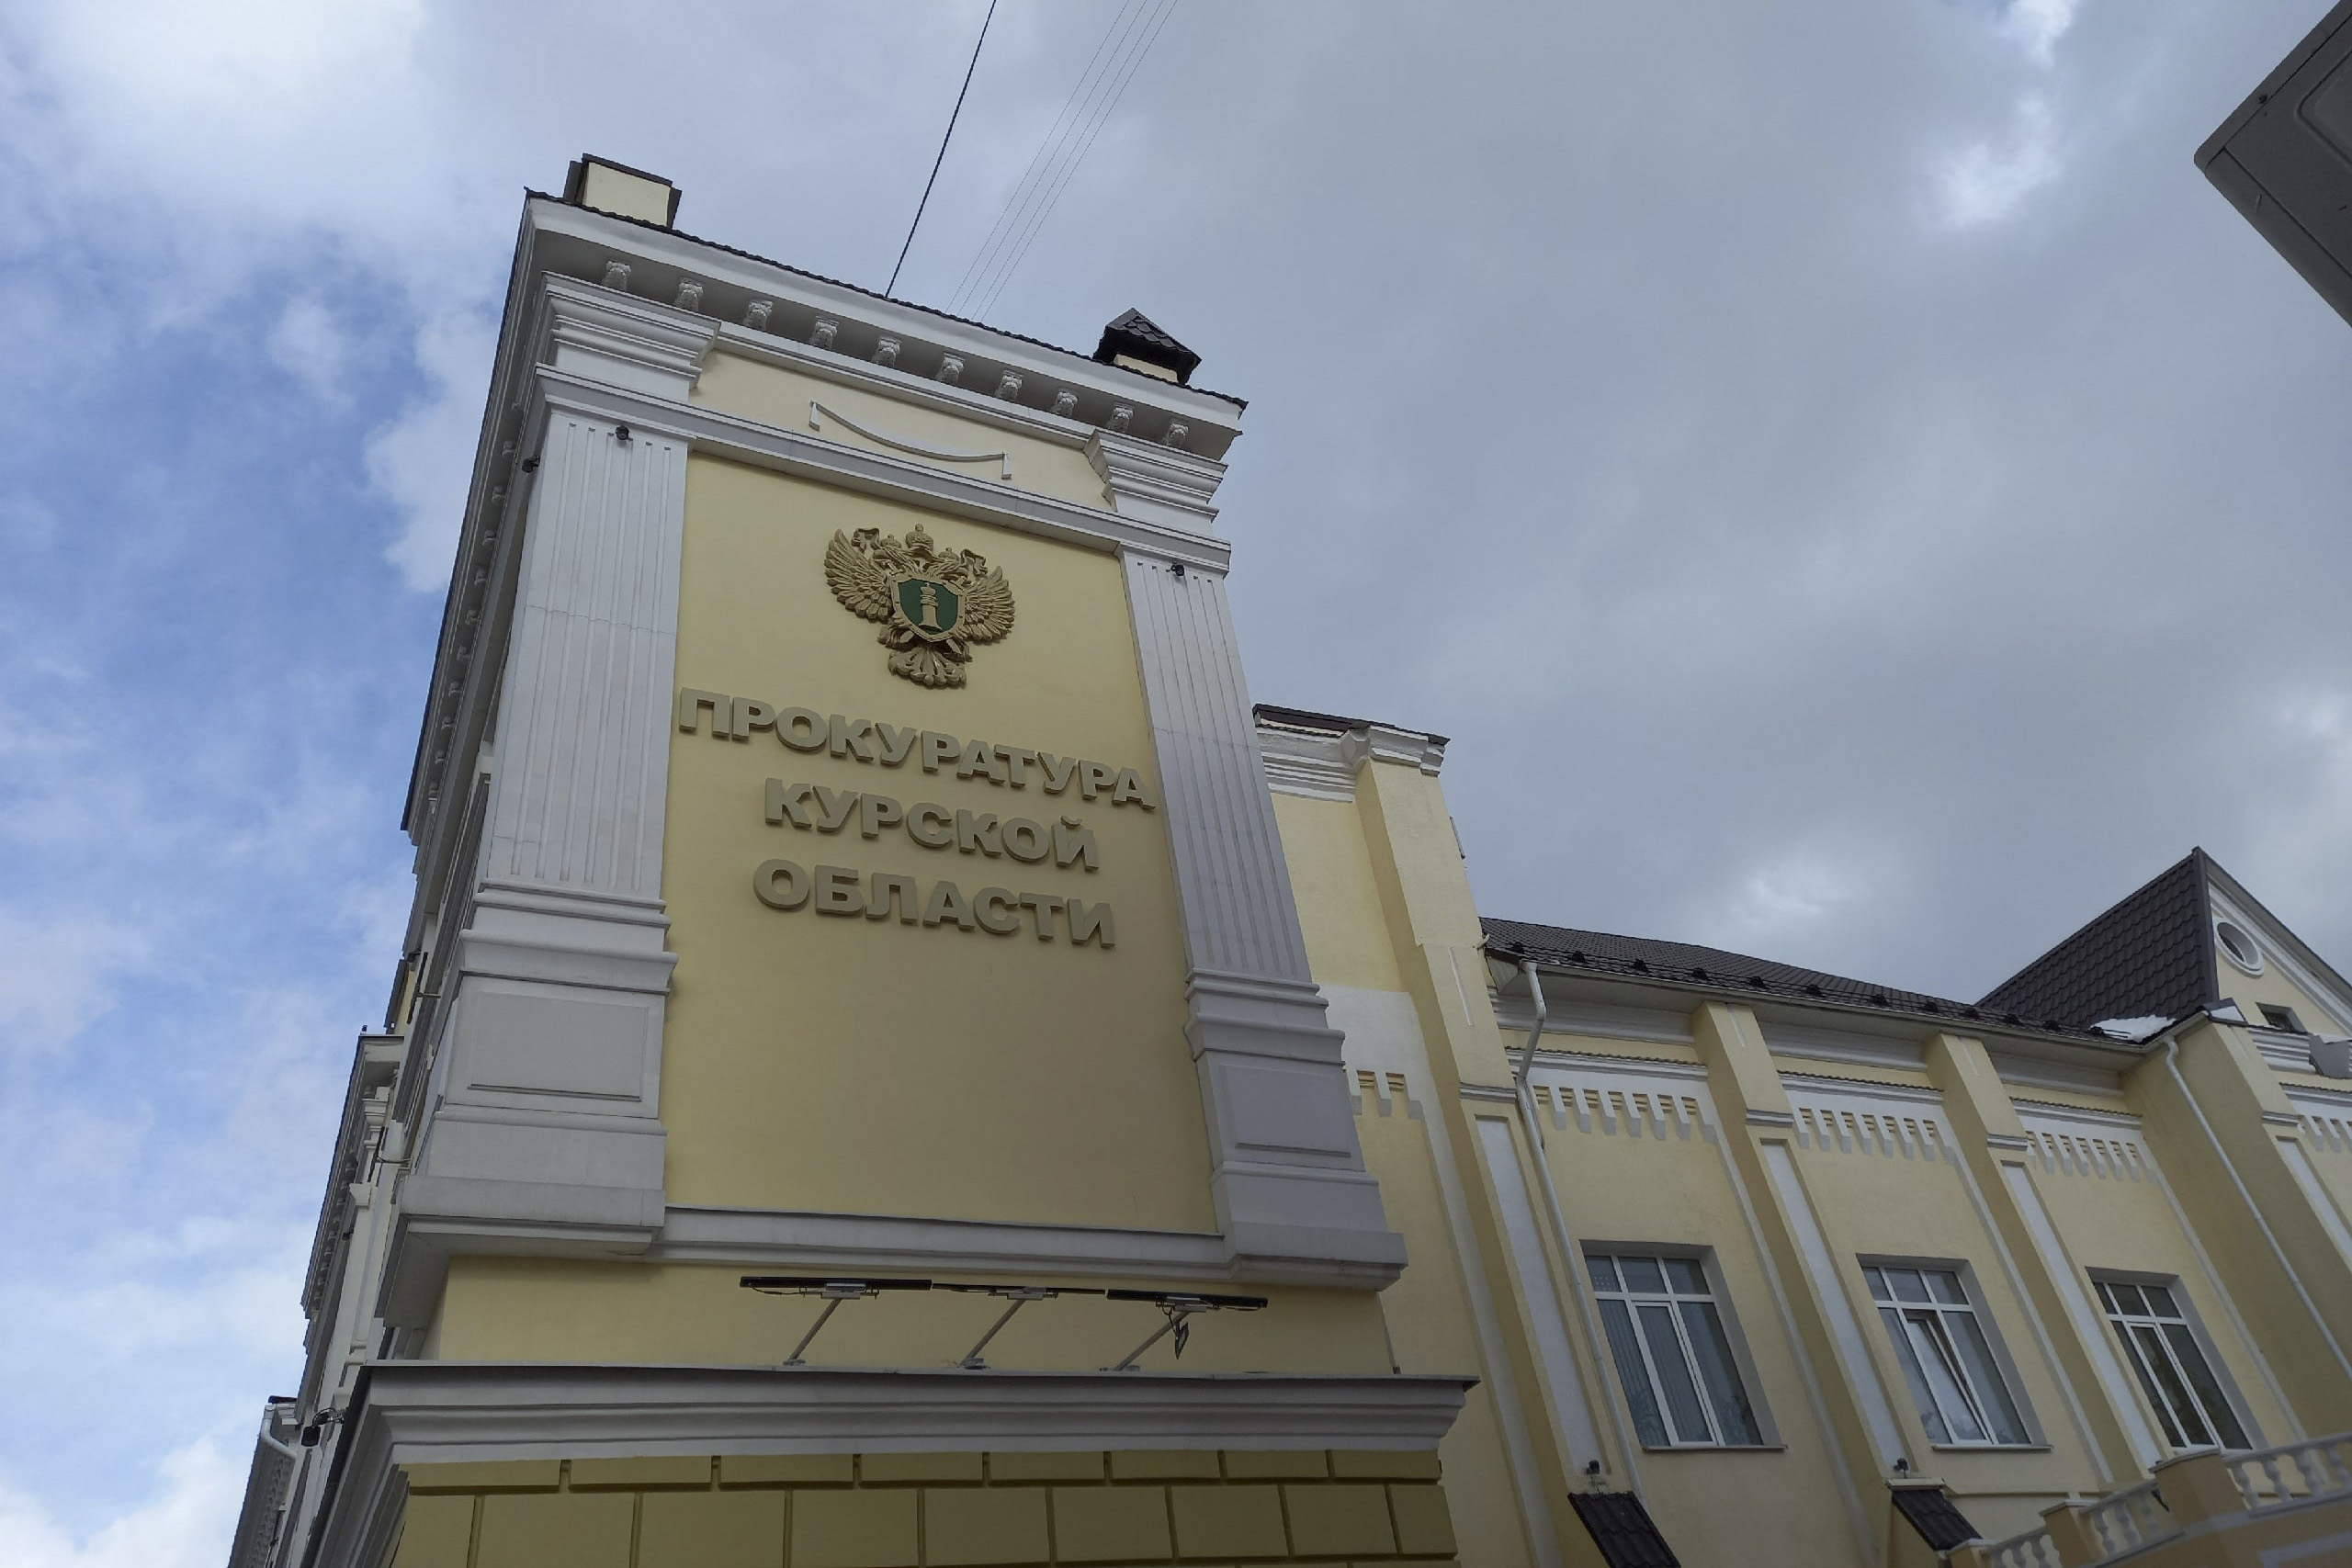 Глава Коренево Курской области обвиняется в злоупотреблении должностными полномочиями